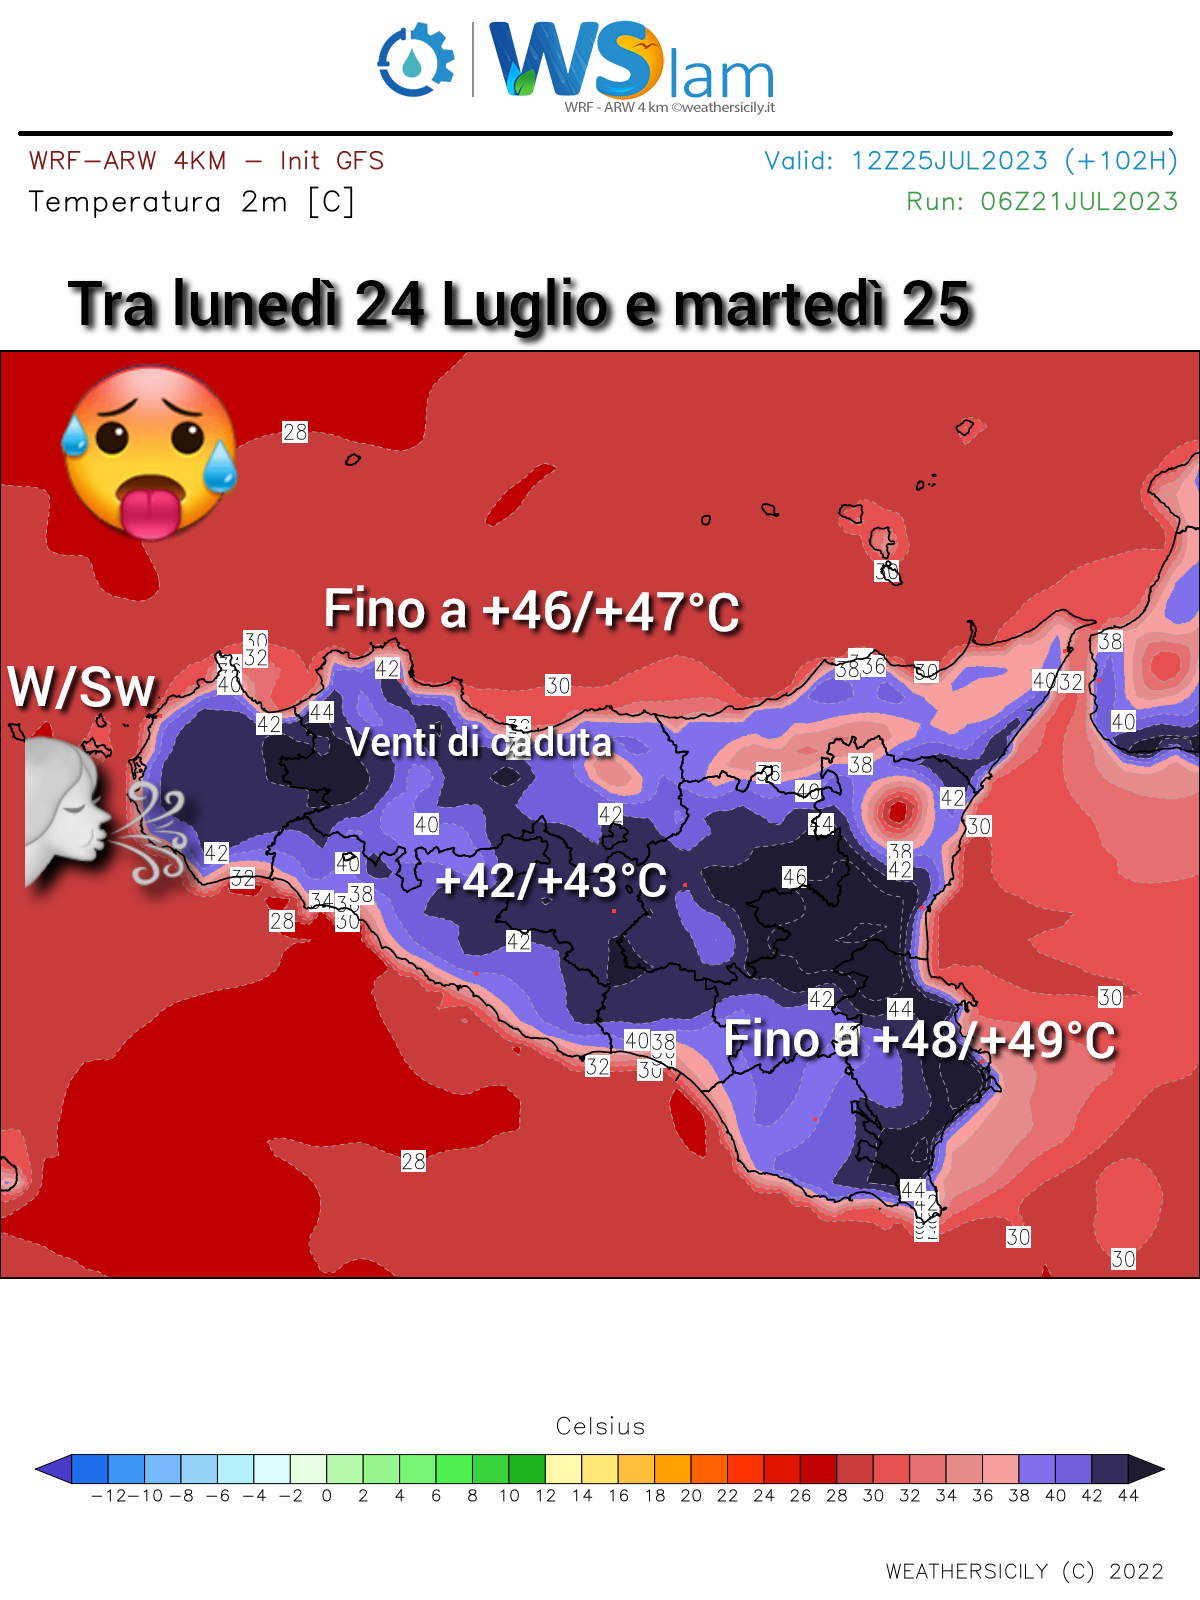 Meteo Sicilia: ci aspettano giornate bollenti! Fino a +48/+49°C mettendo a rischio il record assoluto di caldo Europeo.